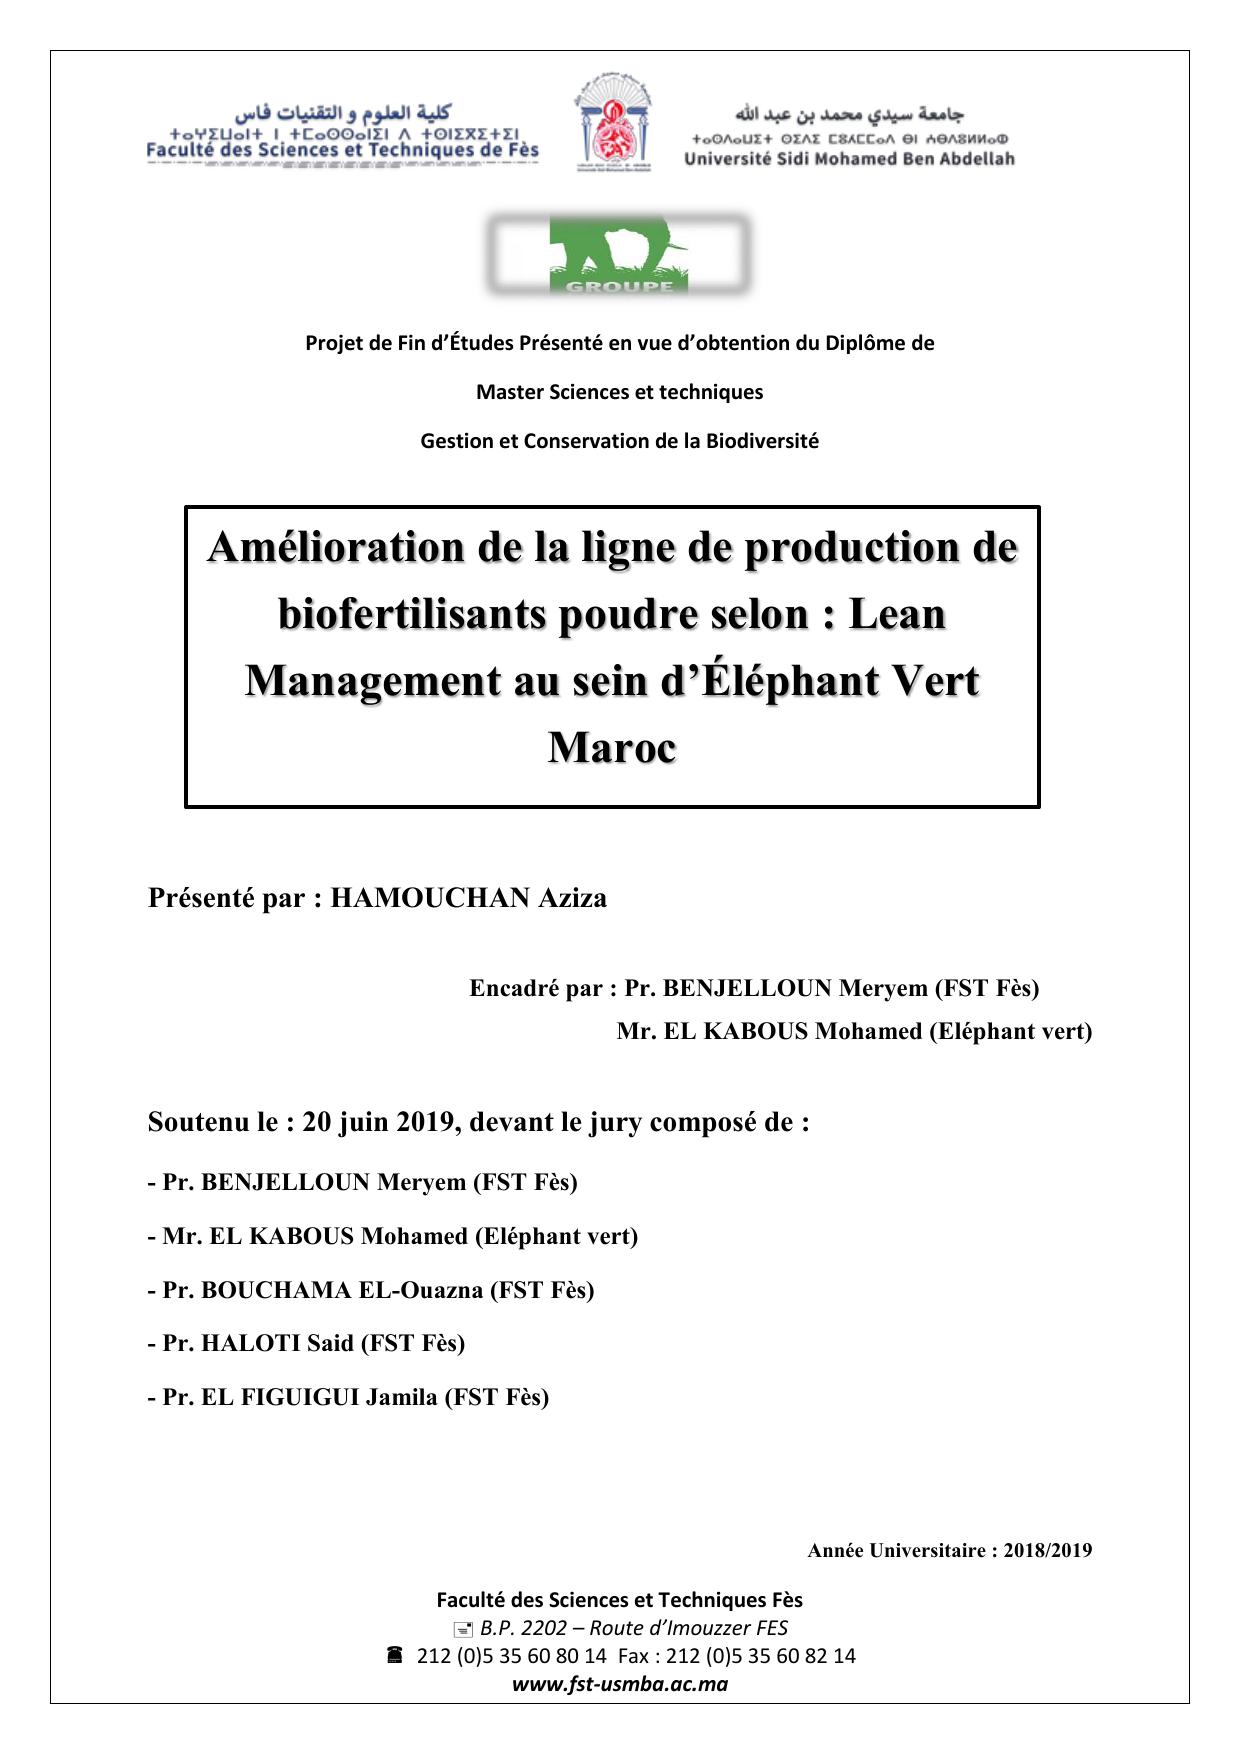 Amélioration de la ligne de production de biofertilisants poudre selon : Lean Management au sein d’Éléphant Vert Maroc